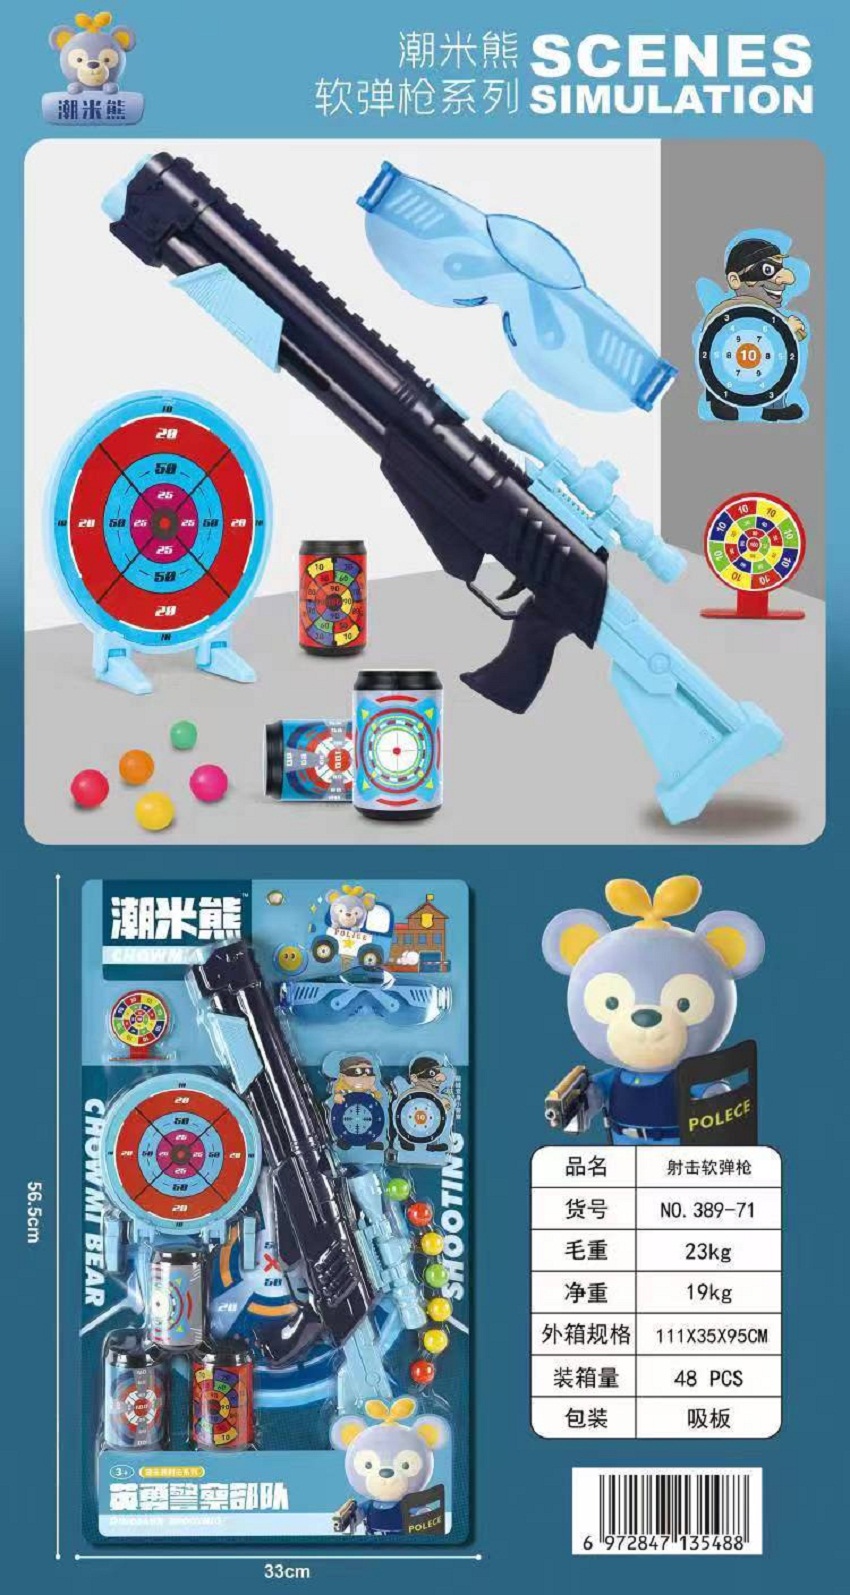 389-71板装软弹枪英勇警察队儿童玩具